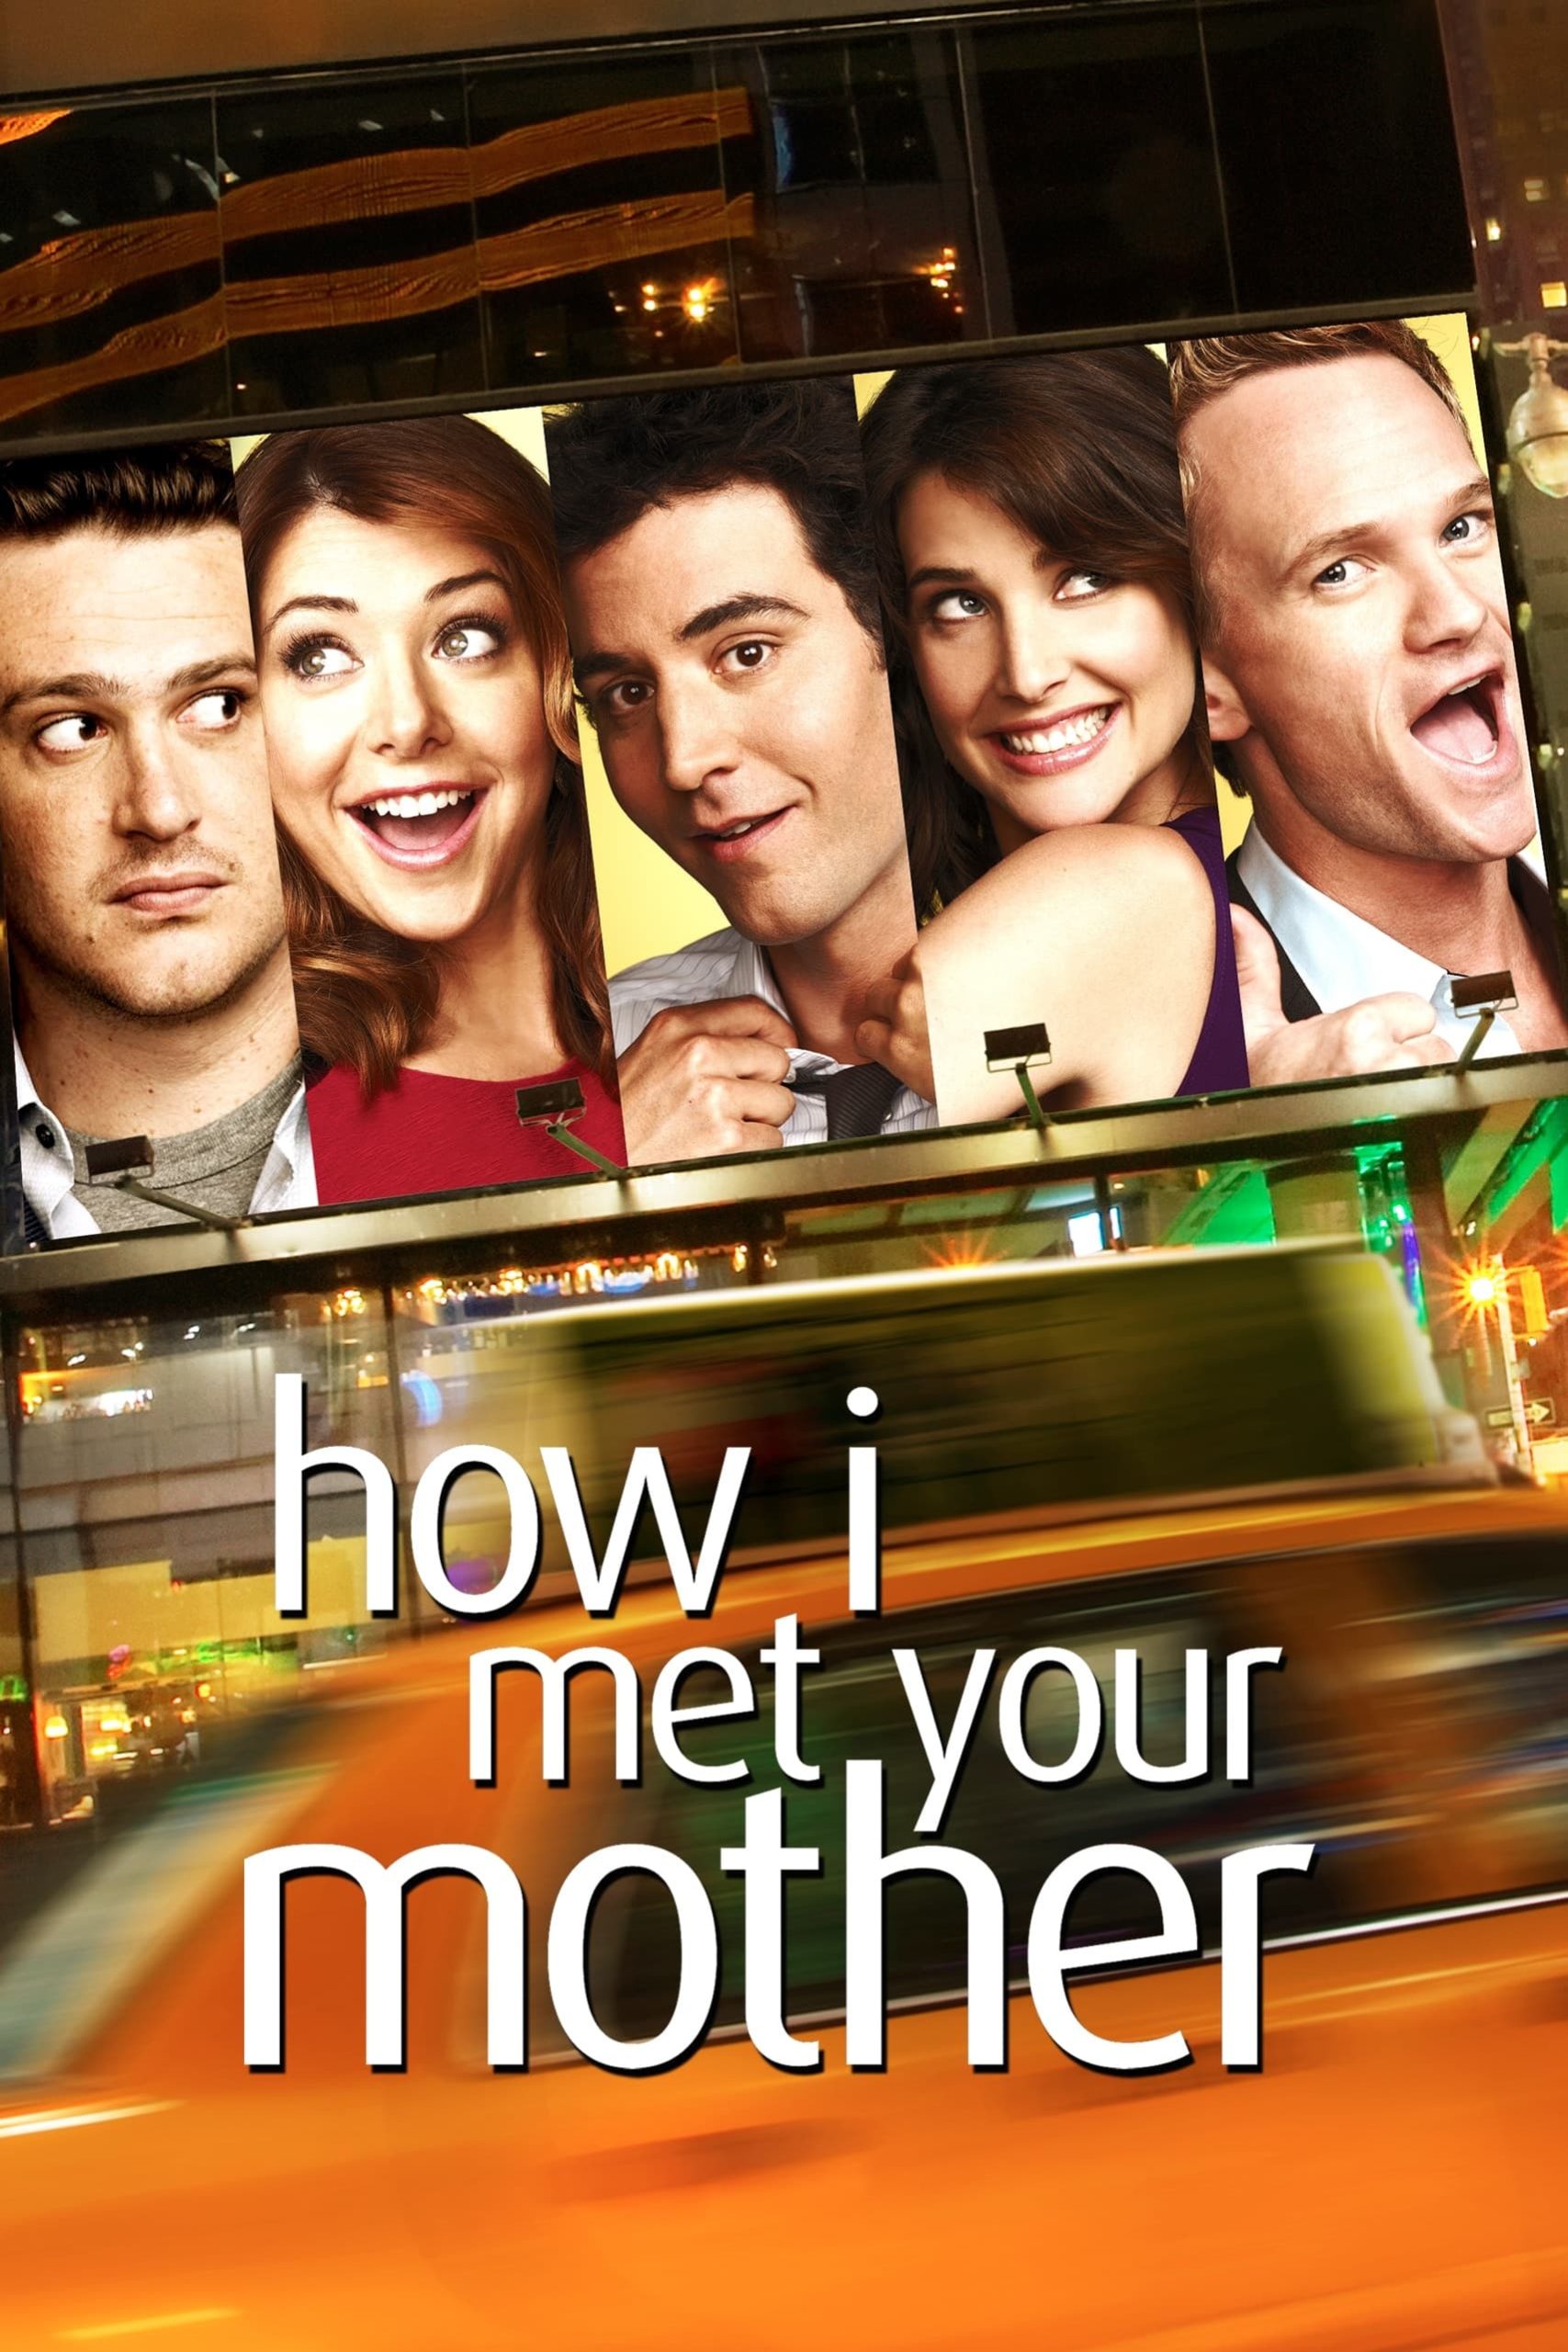 مسلسل How I Met Your Mother الموسم الثامن مترجم